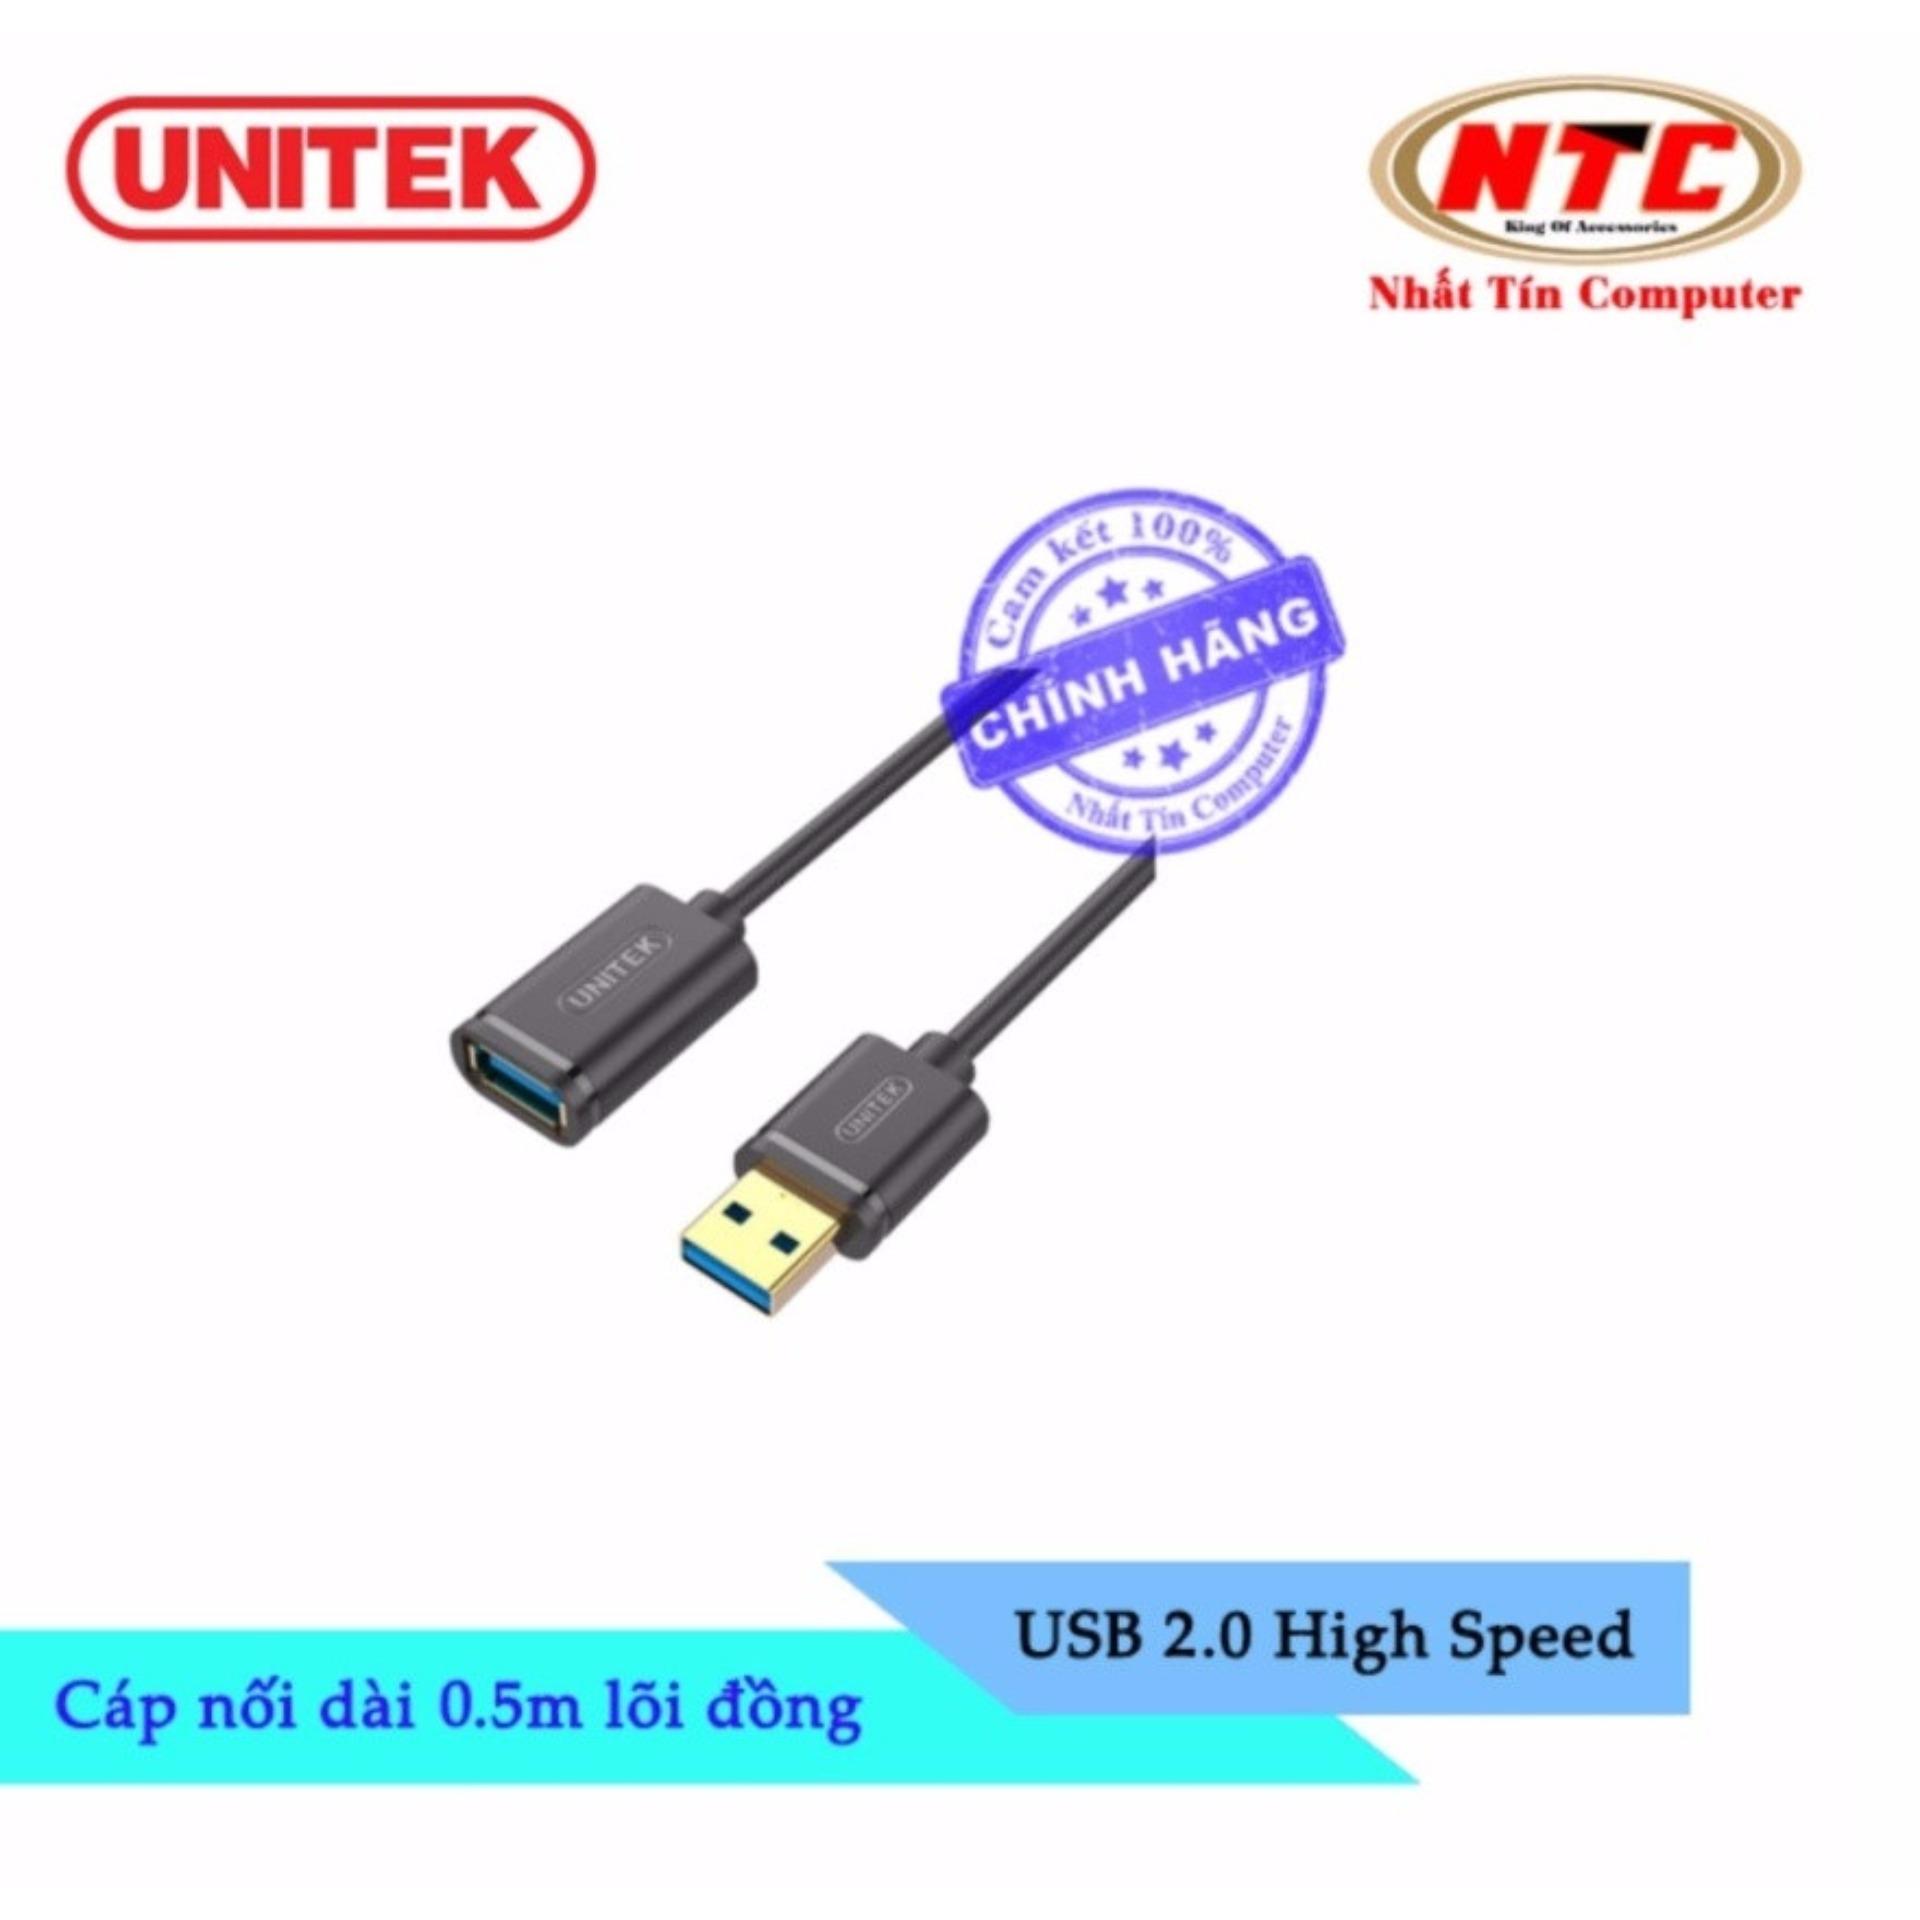 Cáp USB nối dài 2.0 Unitek Y-C 447GBK - dài 0.5m (Đen)